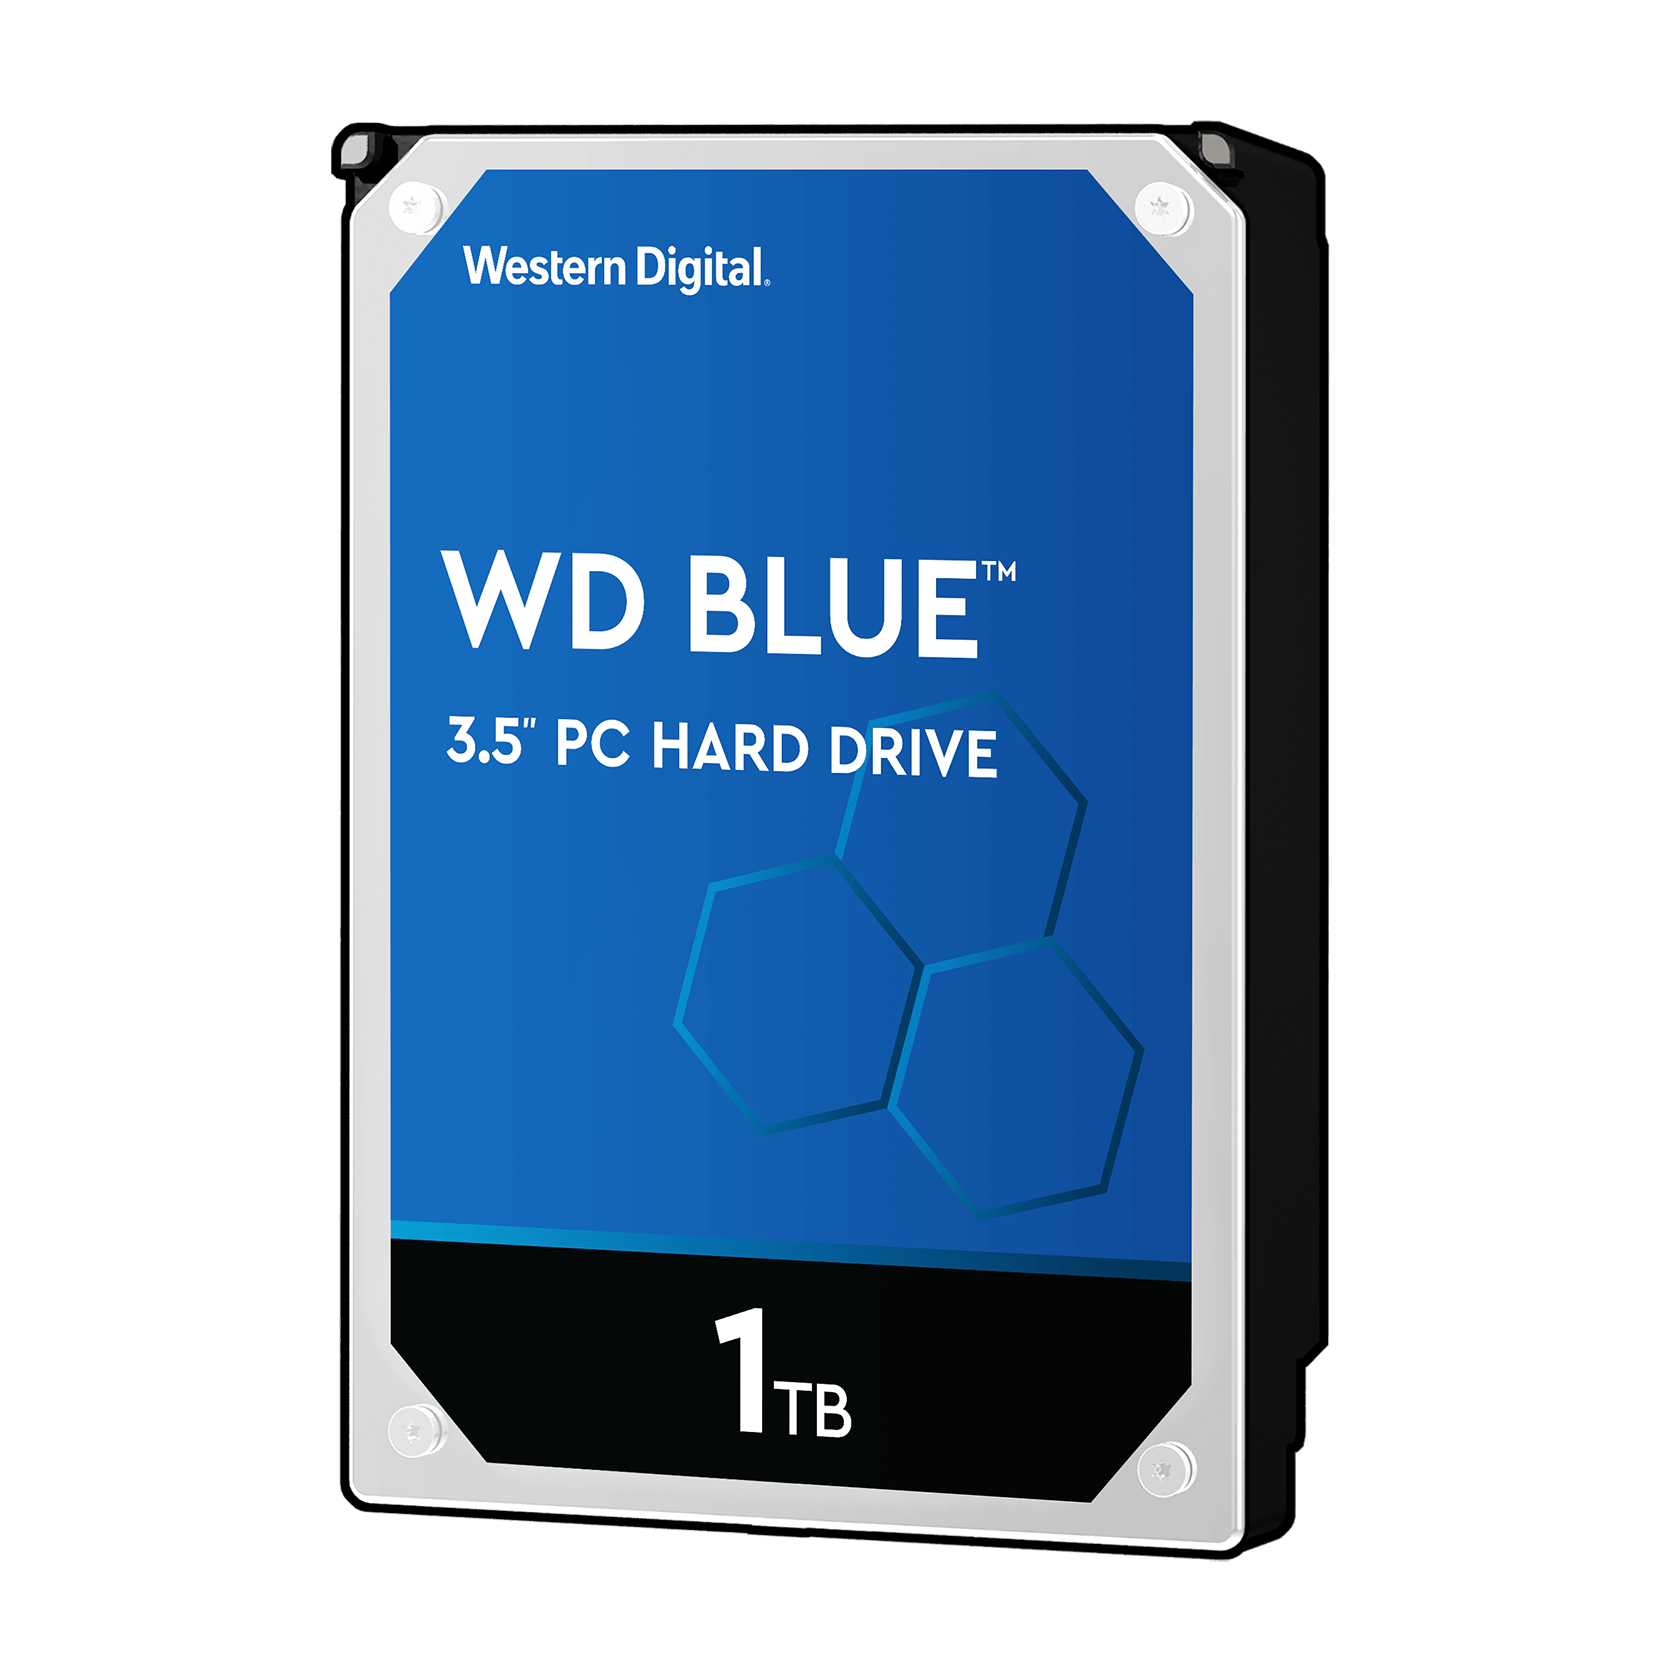 بهترین هارد دیسک با بودجه کم: WD Blue Desktop